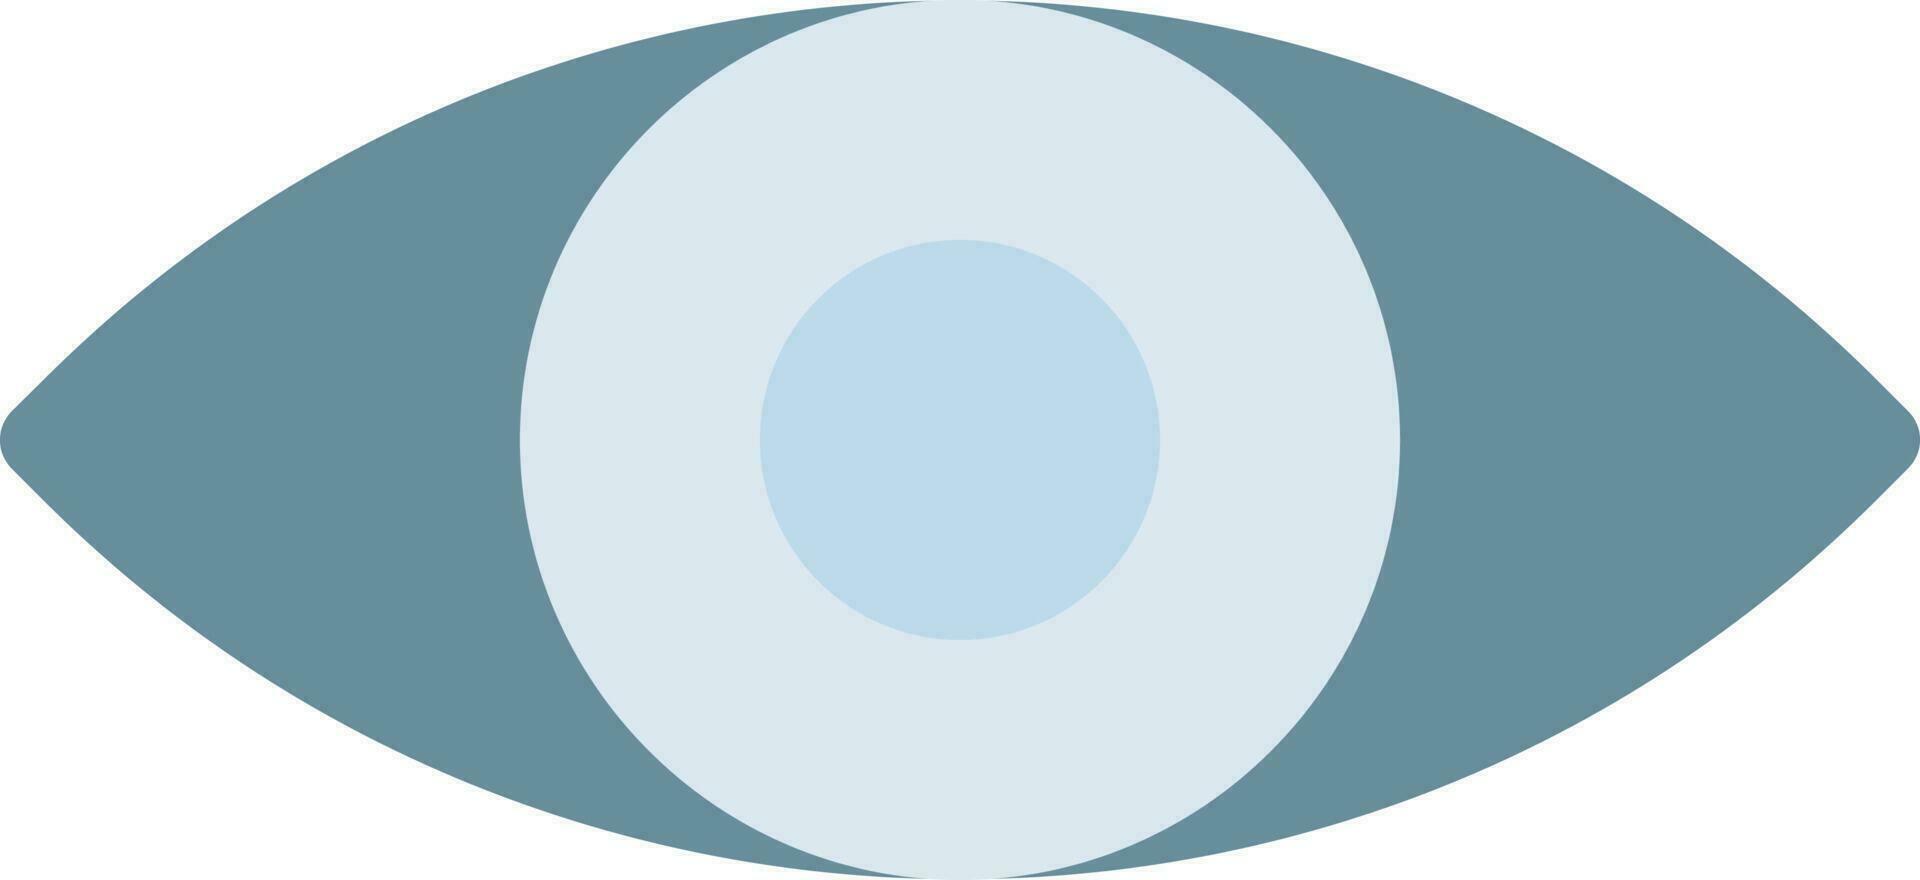 illustrazione vettoriale dell'occhio su uno sfondo. simboli di qualità premium. icone vettoriali per il concetto e la progettazione grafica.